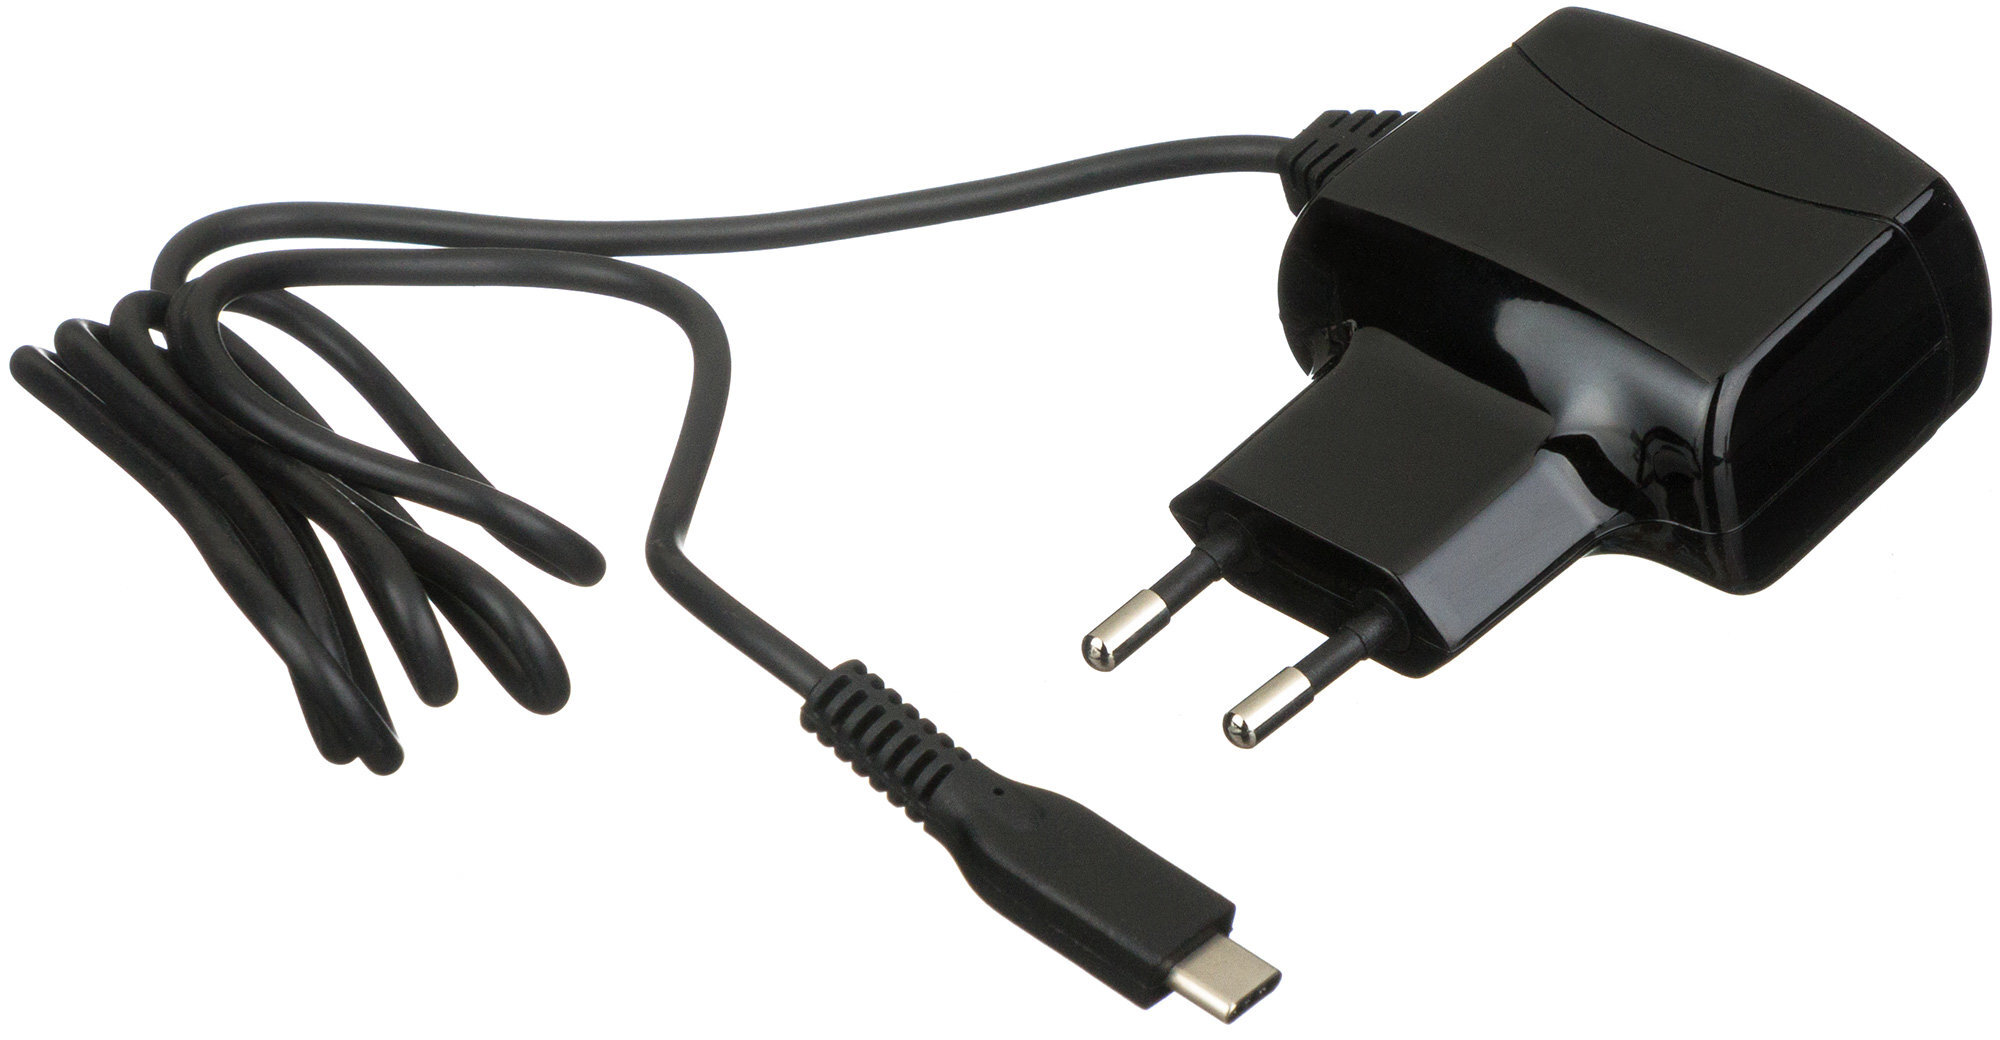 Зарядное устройство 2 в 1. СЗУ Type-c 2,1a, Black, deppa, 23150. СЗУ Micro USB A/connect 5v=2.1a Black 202259. СЗУ deppa 11425. СЗУ мини юсб.